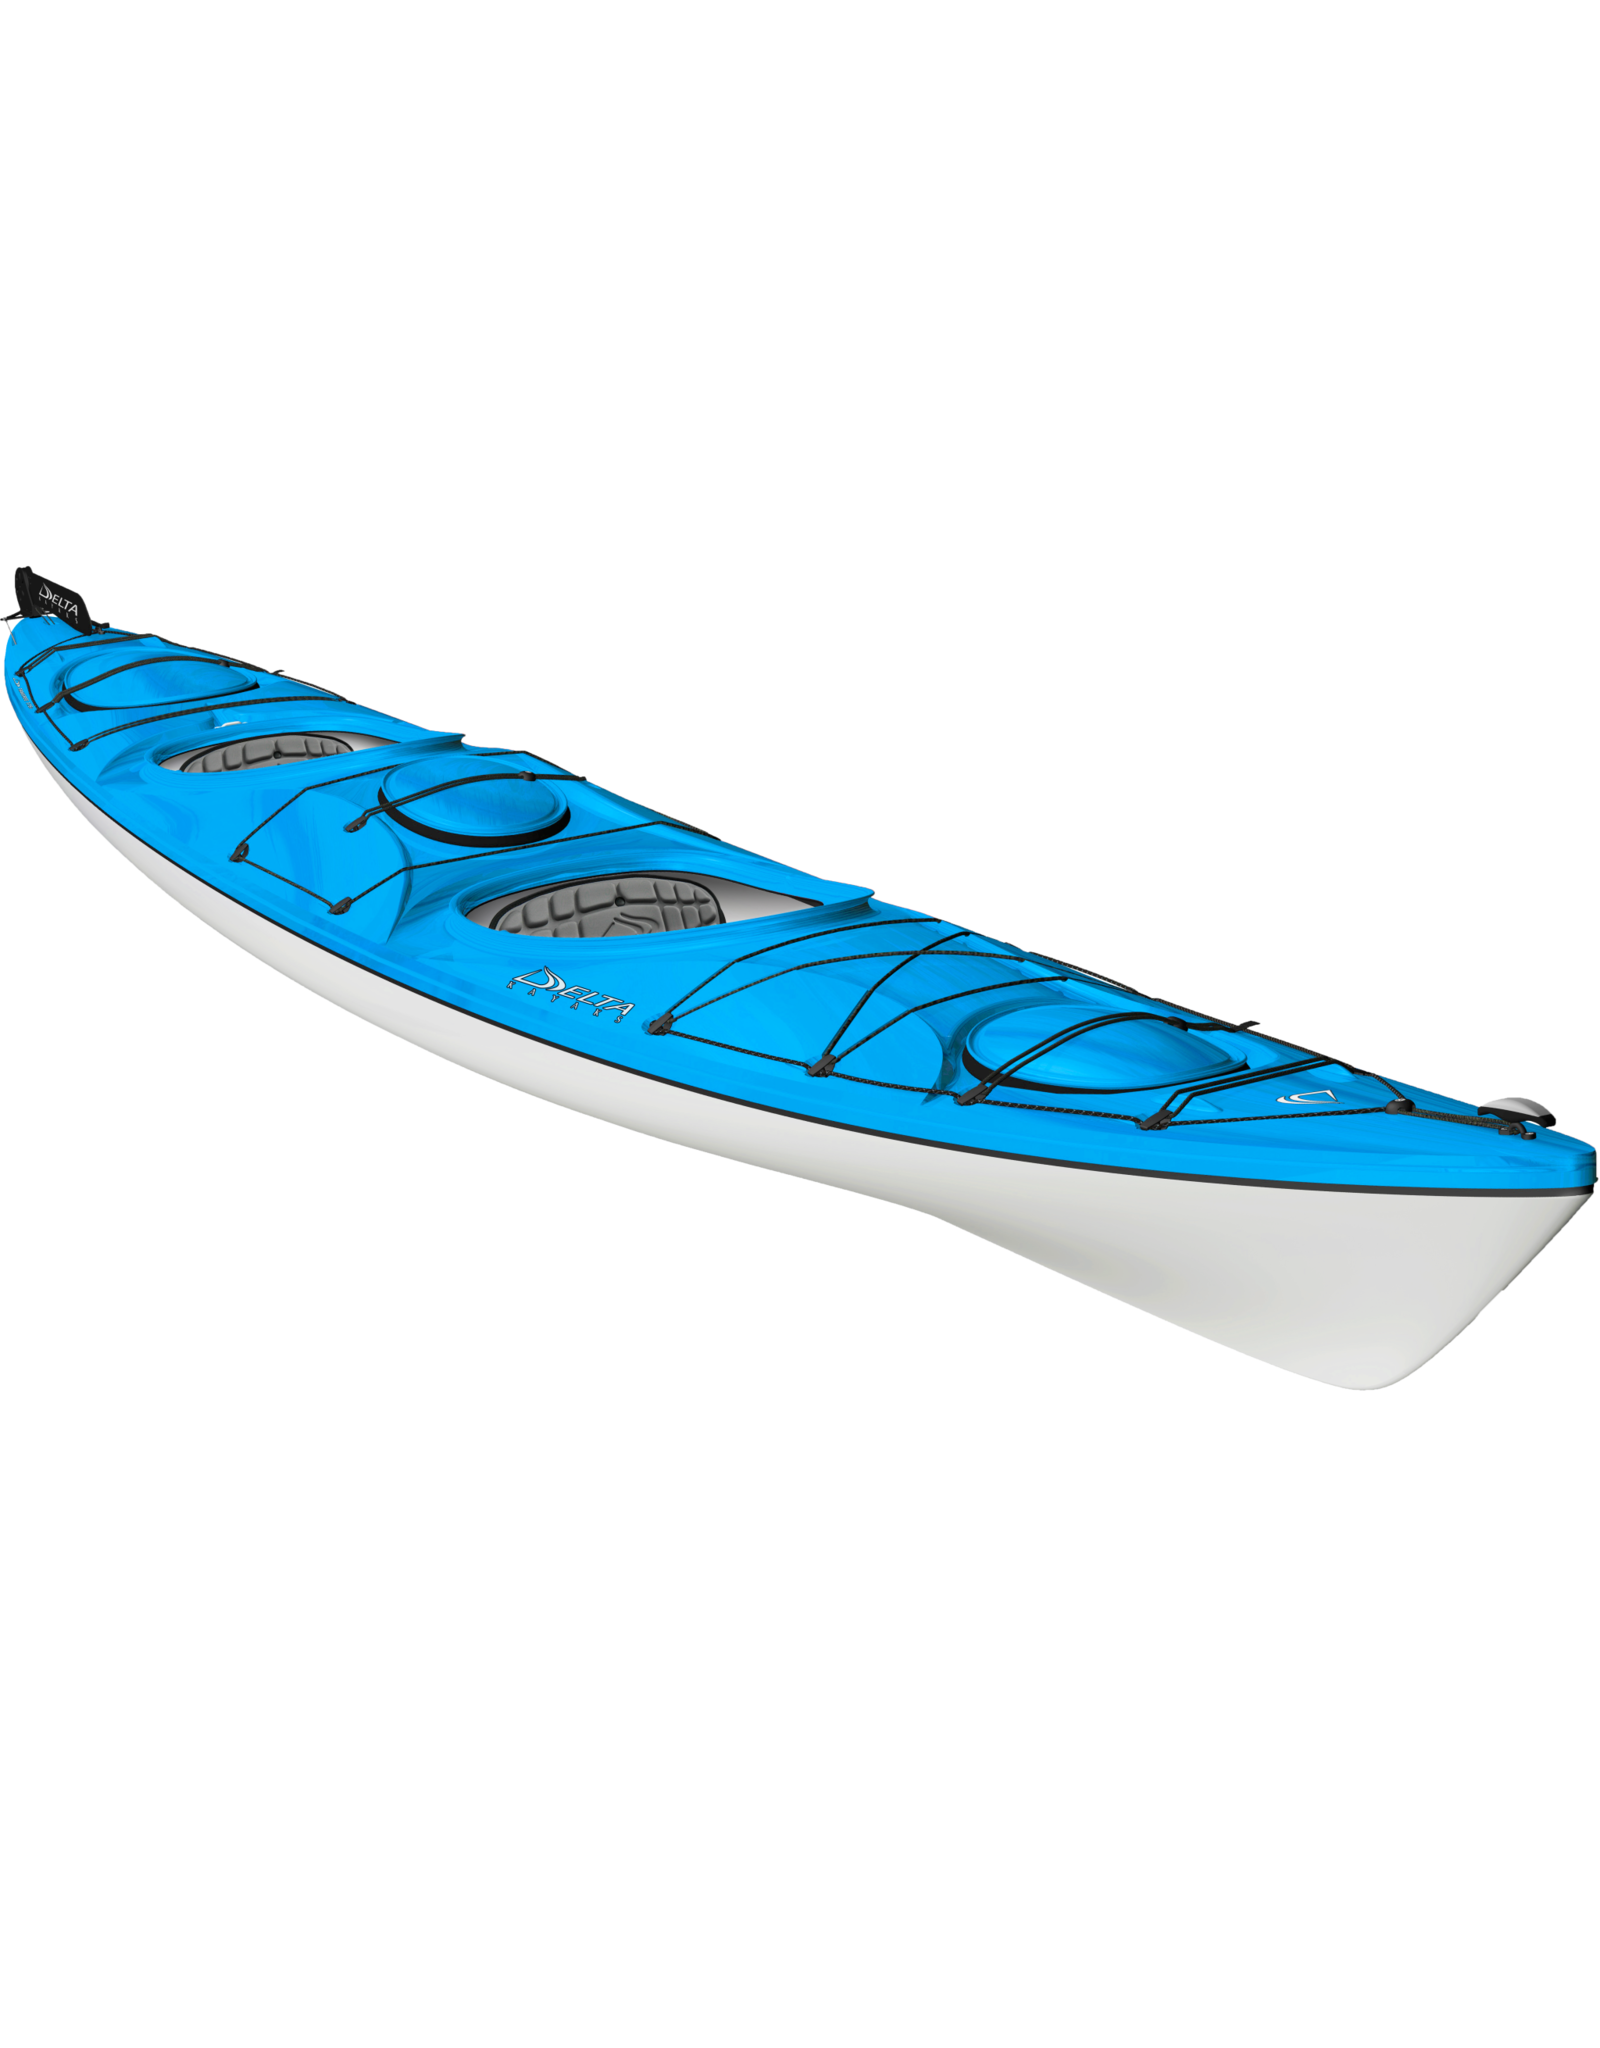 Delta Delta kayak Traverse 17.5T with rudder